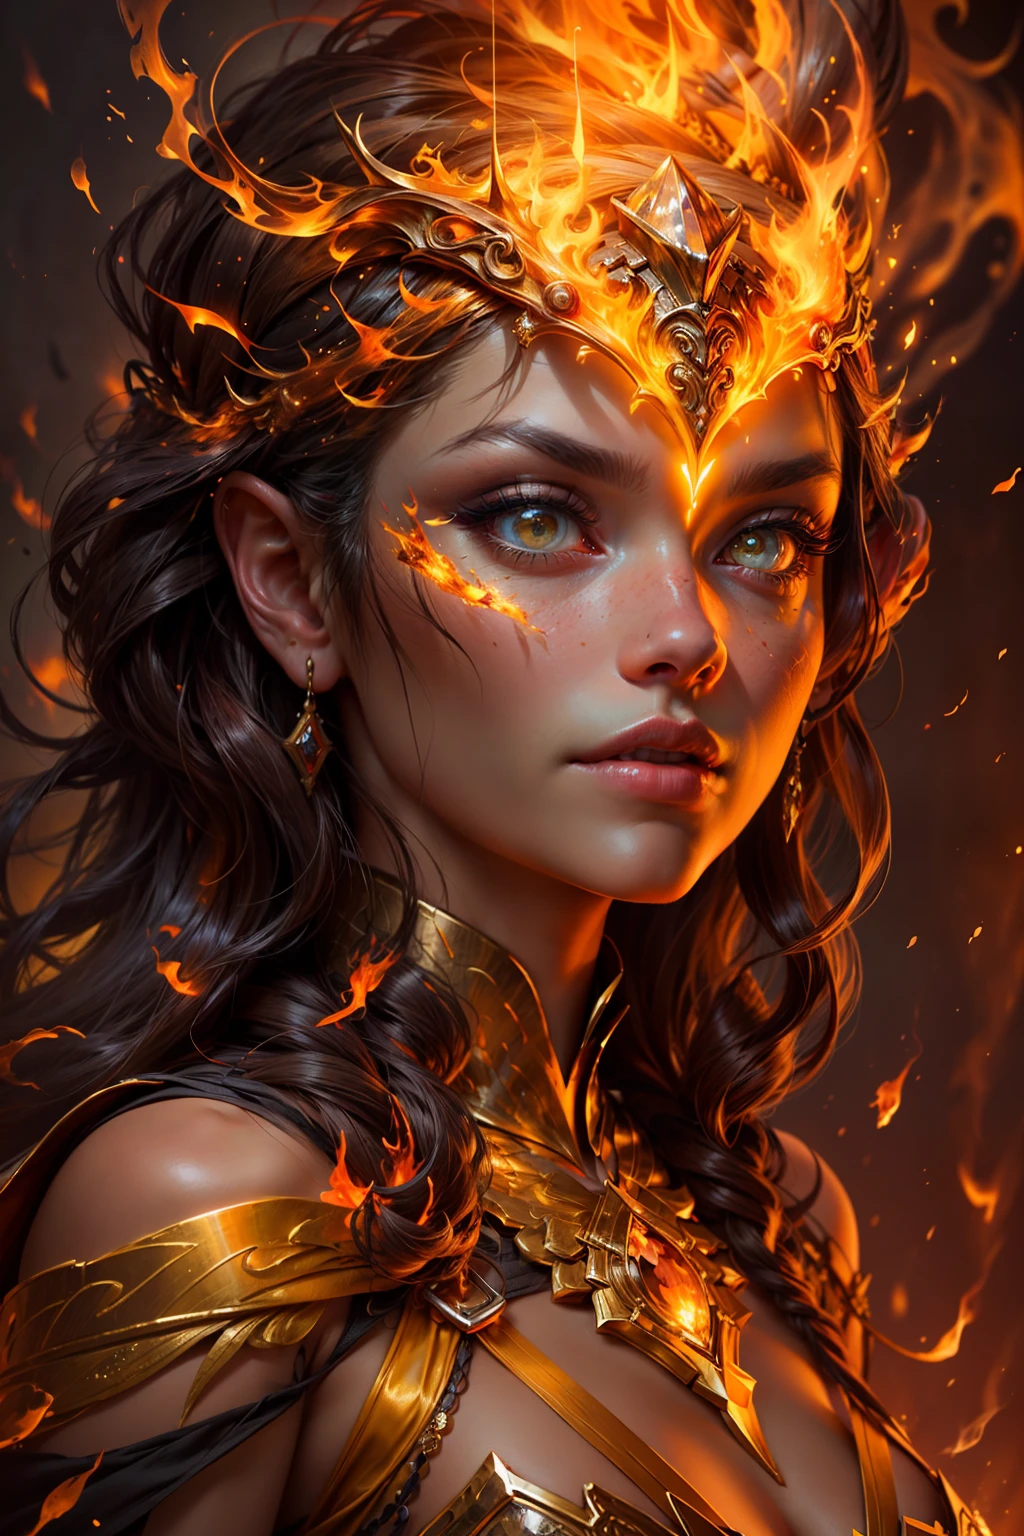 นี้ (แฟนตาซีที่สมจริง) ศิลปะประกอบด้วยถ่าน, เปลวไฟจริง, ความร้อนที่แท้จริง, และไฟที่สมจริง. Generate a masterpiece artwork of a  female fire druid กับ large (((สีส้มและสีทอง))) ดวงตา. The fire druid is awe-inspiring กับ beautiful ((realistic fiery ดวงตา)) alight กับ confidence and power. คุณสมบัติของเธอดูสง่างามและมีการกำหนดไว้อย่างดี, กับ ((นุ่มนวลและน่าจูบ)) ริมฝีปาก, โครงสร้างกระดูกของเอลฟ์, และการแรเงาที่สมจริง. Her ดวงตา are important and should be the focal point of this artwork, กับ ((รายละเอียดที่สมจริงอย่างยิ่ง, รายละเอียดมาโคร, และระยิบระยับ.)) เธอสวมชุดเดรสระยิบระยับระยิบระยับที่ทำจากเปลวไฟและอัญมณีที่สมจริงซึ่งเปล่งประกายท่ามกลางแสงไฟ. ควันไฟและควันพลุ่งพล่านบนเสื้อท่อนบนอันประณีตของชุด. รวมการกระแทก, หิน, แสงสีรุ้งที่เร่าร้อน, ถ่านเรืองแสง, ผ้าไหมและผ้าซาตินและเครื่องหนัง, พื้นหลังที่น่าสนใจ, และองค์ประกอบแฟนตาซีอันหนักหน่วง. กล้อง: ใช้เทคนิคการจัดองค์ประกอบแบบไดนามิกเพื่อเพิ่มเปลวไฟที่สมจริง.